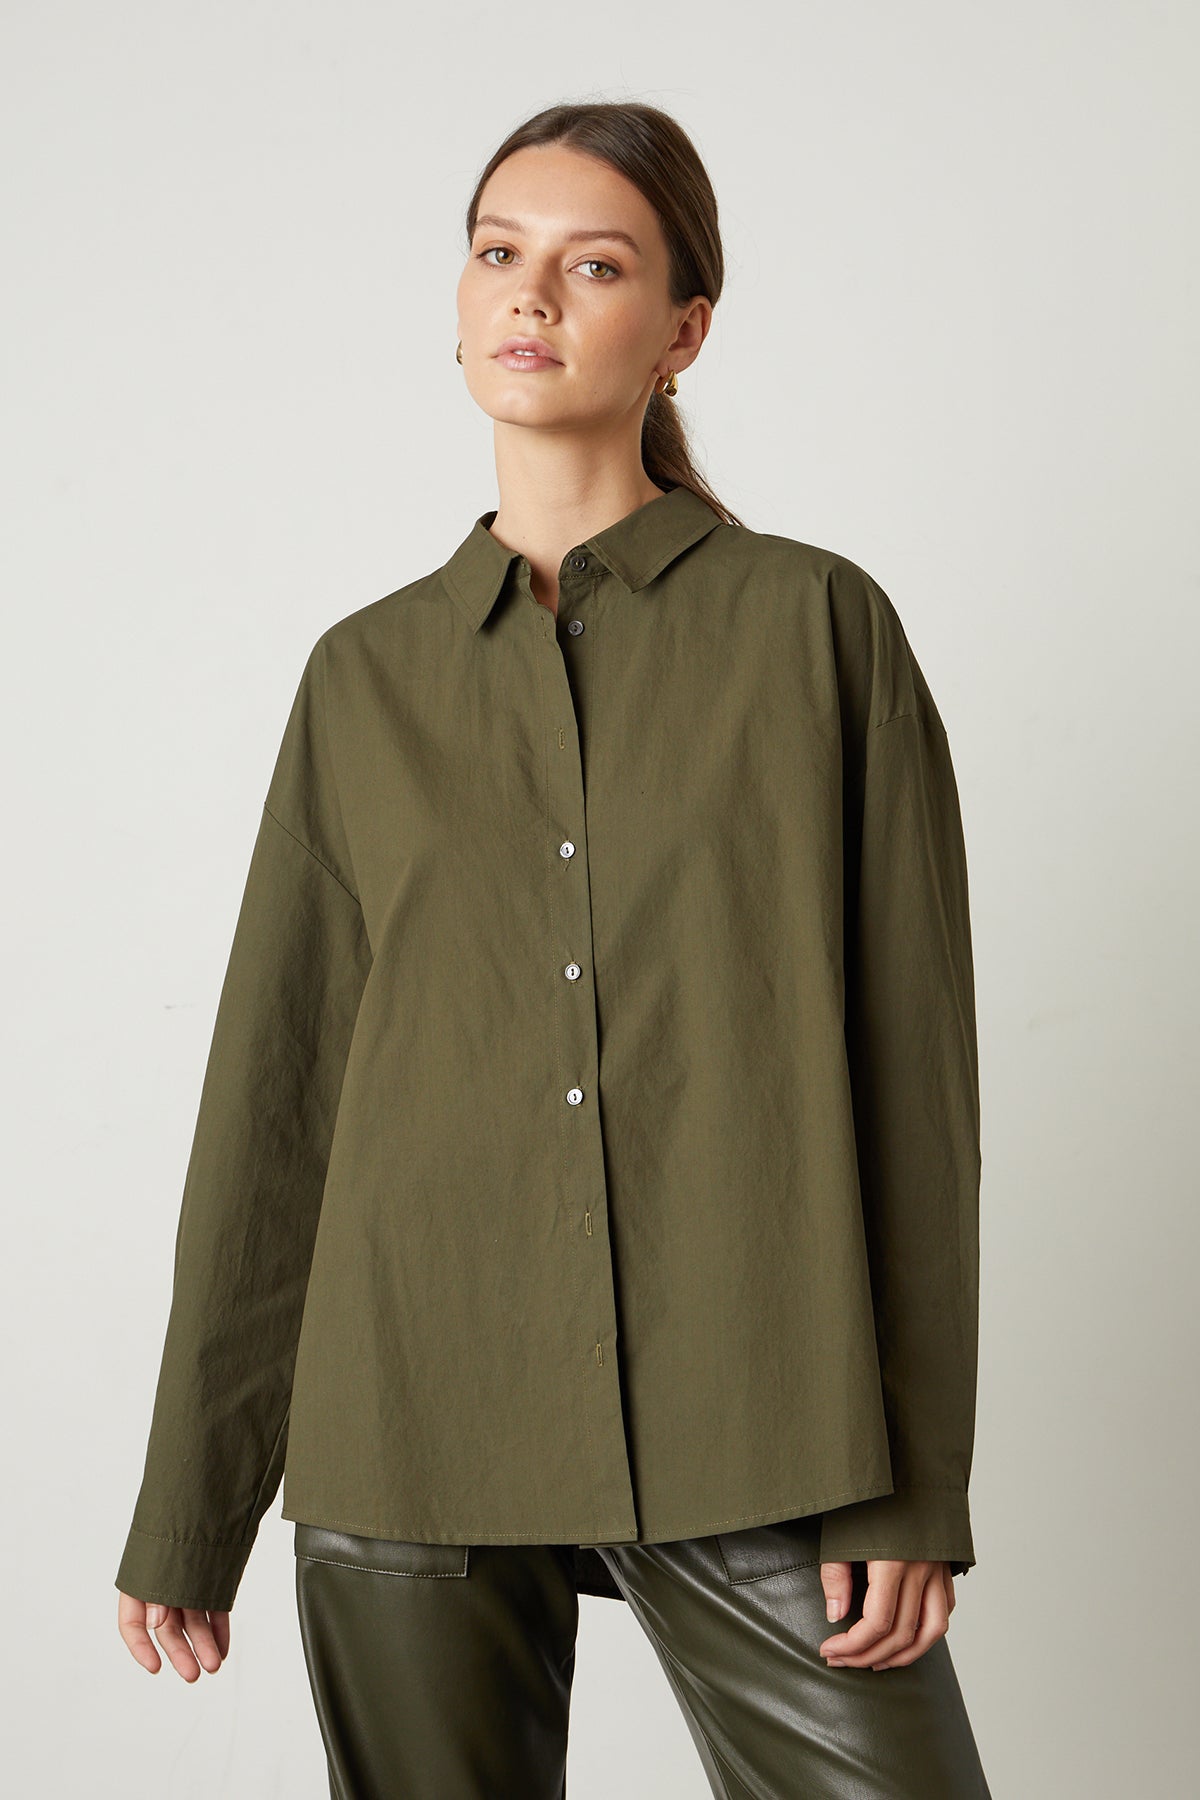 Dakota Button-Up Shirt in olivine front-25669056102593